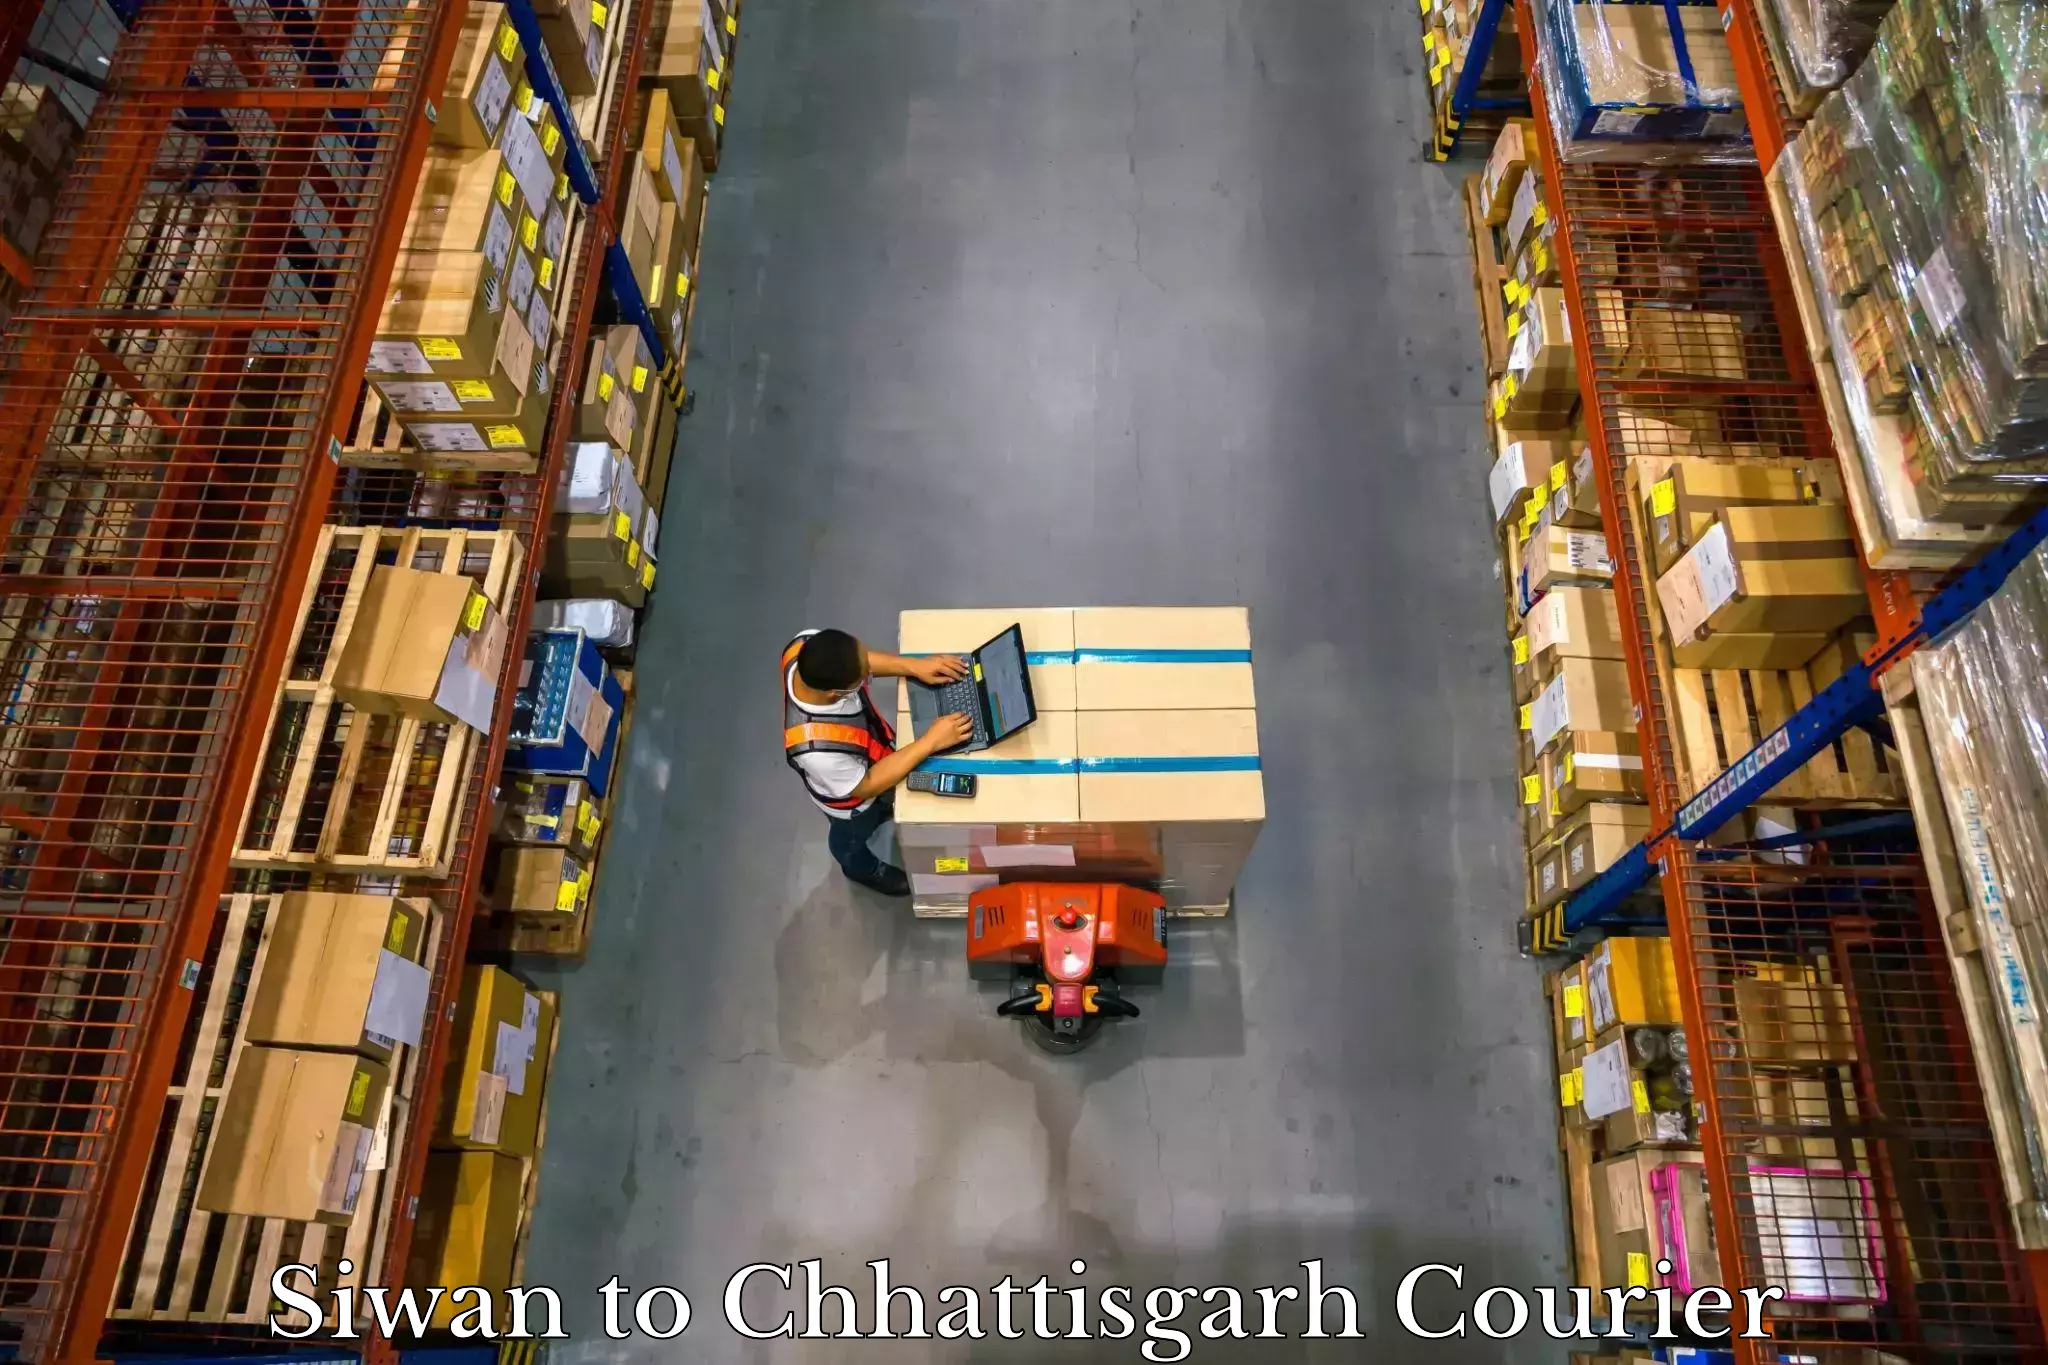 Electronic items luggage shipping in Siwan to Chhattisgarh